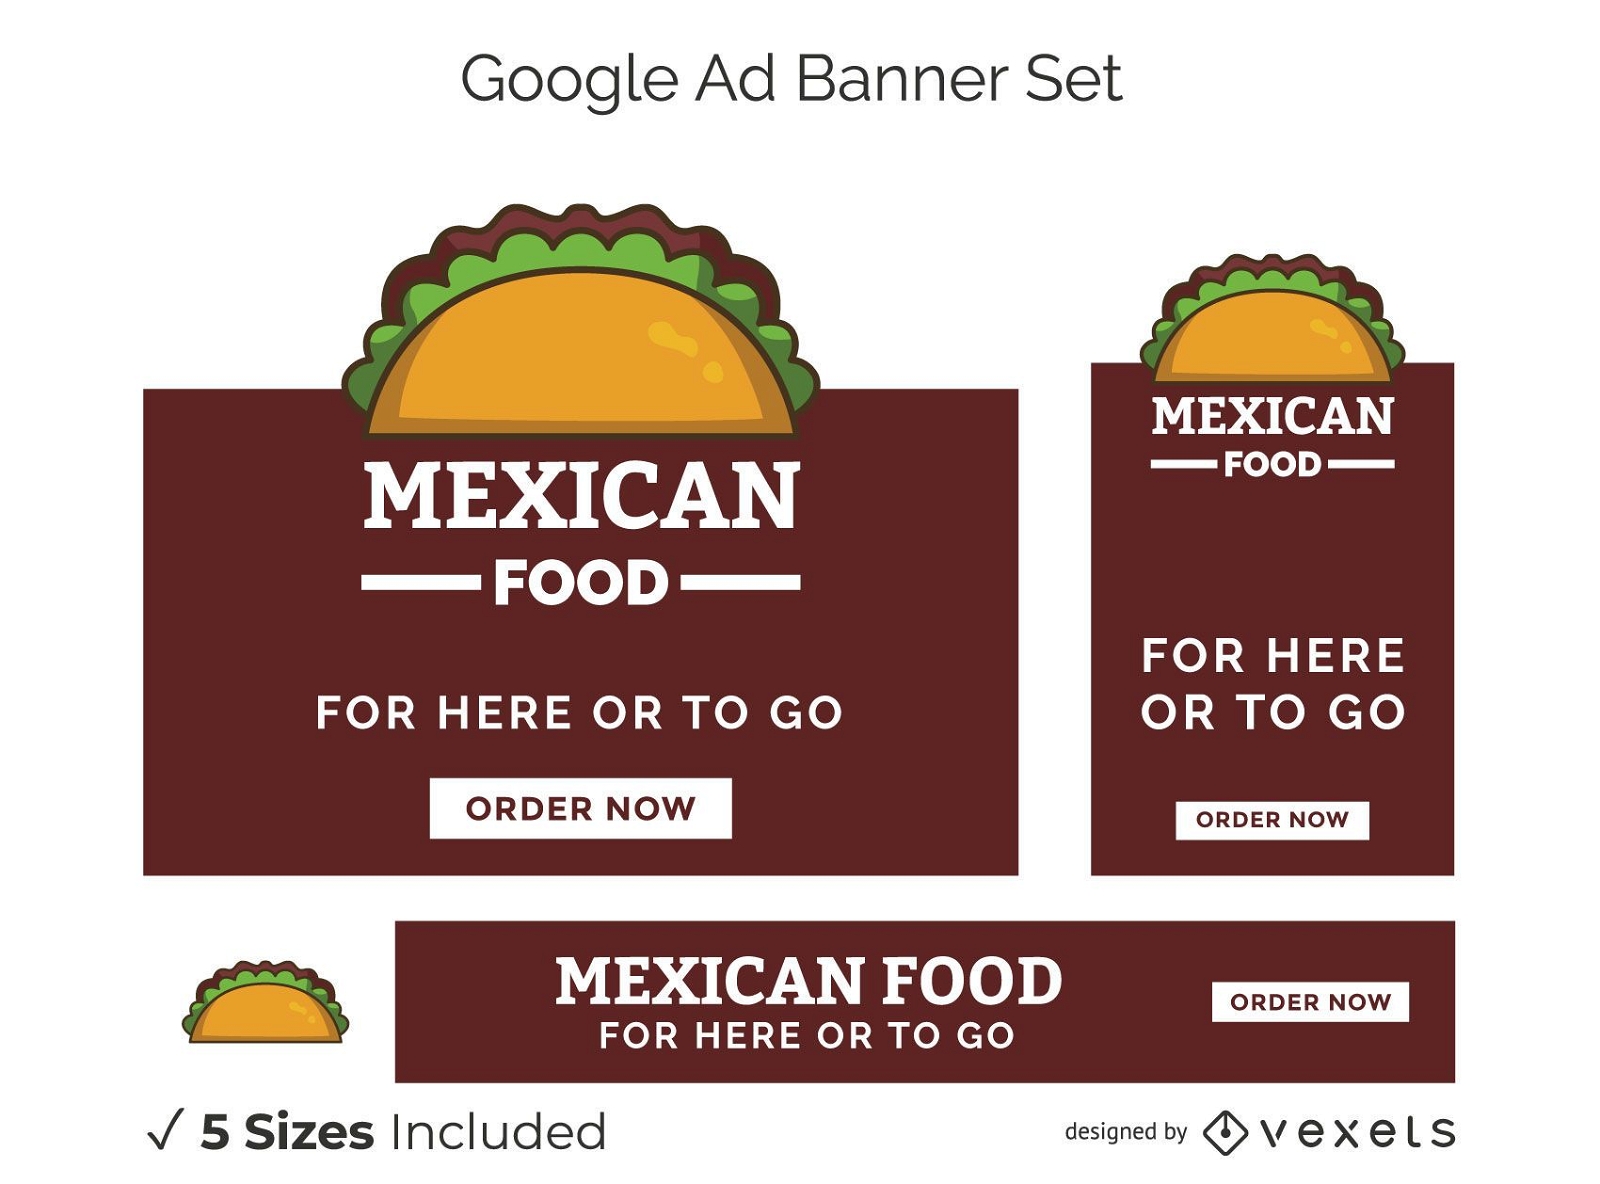 Conjunto de banners do Google Ads para comida mexicana